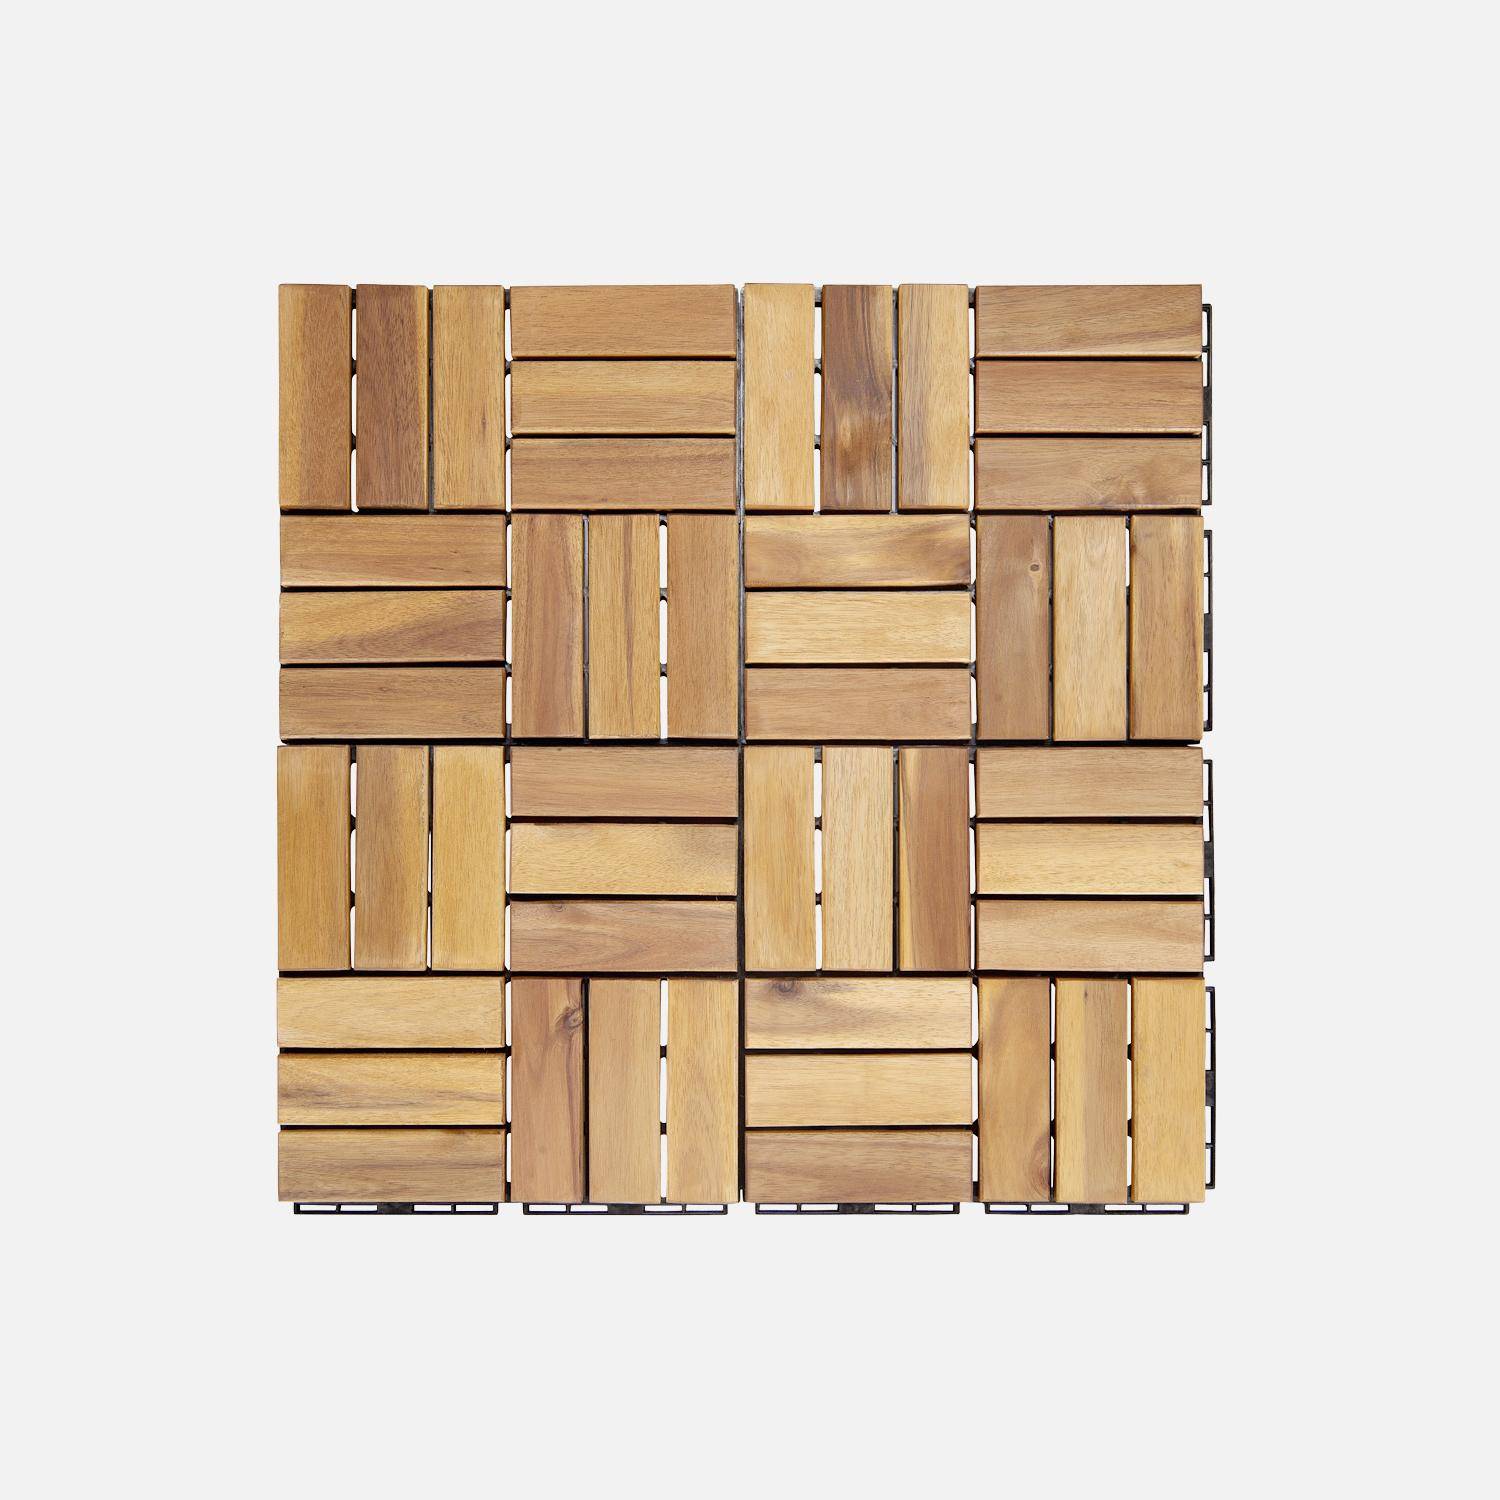 Pacote de 10 ladrilhos de madeira de acácia 30x30cm, padrão quadrado, encaixáveis Photo4